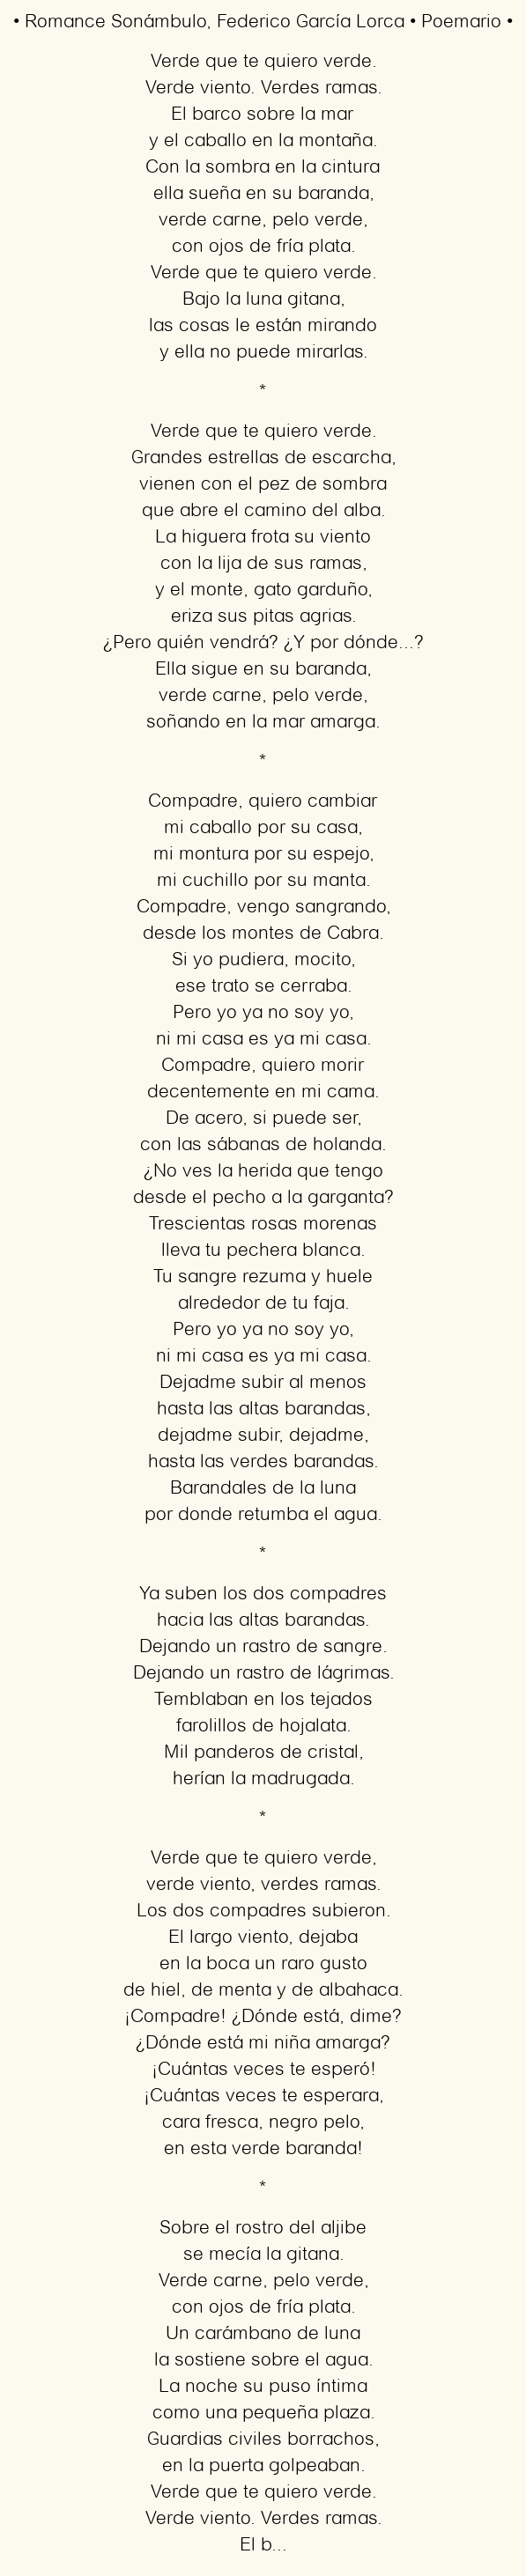 Imagen con el poema Romance sonámbulo, por Federico García Lorca